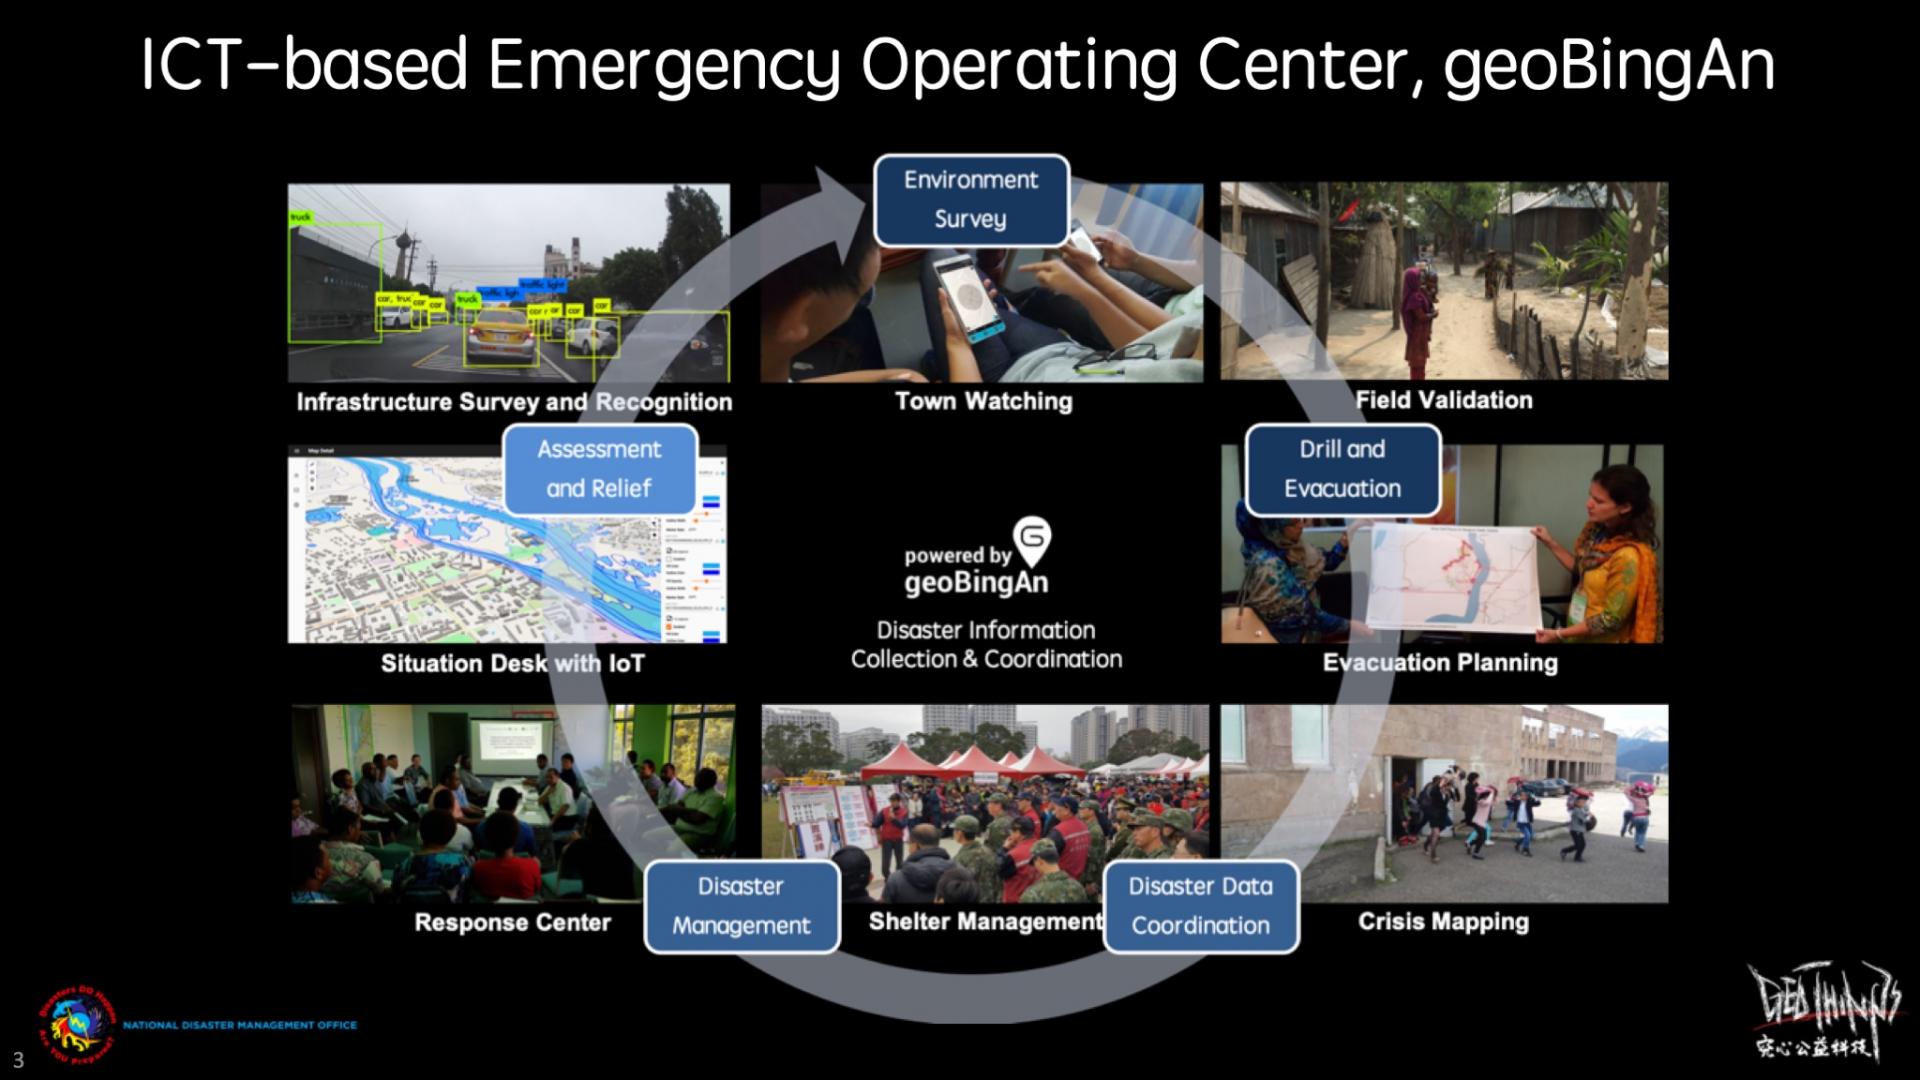 geoBingAn, rozwiązanie ICT do pomocy humanitarnej, to zintegrowana usługa sprawdzająca się w reakcji w trakcie klęski żywiołowej, przed nią i po jej zakończeniu